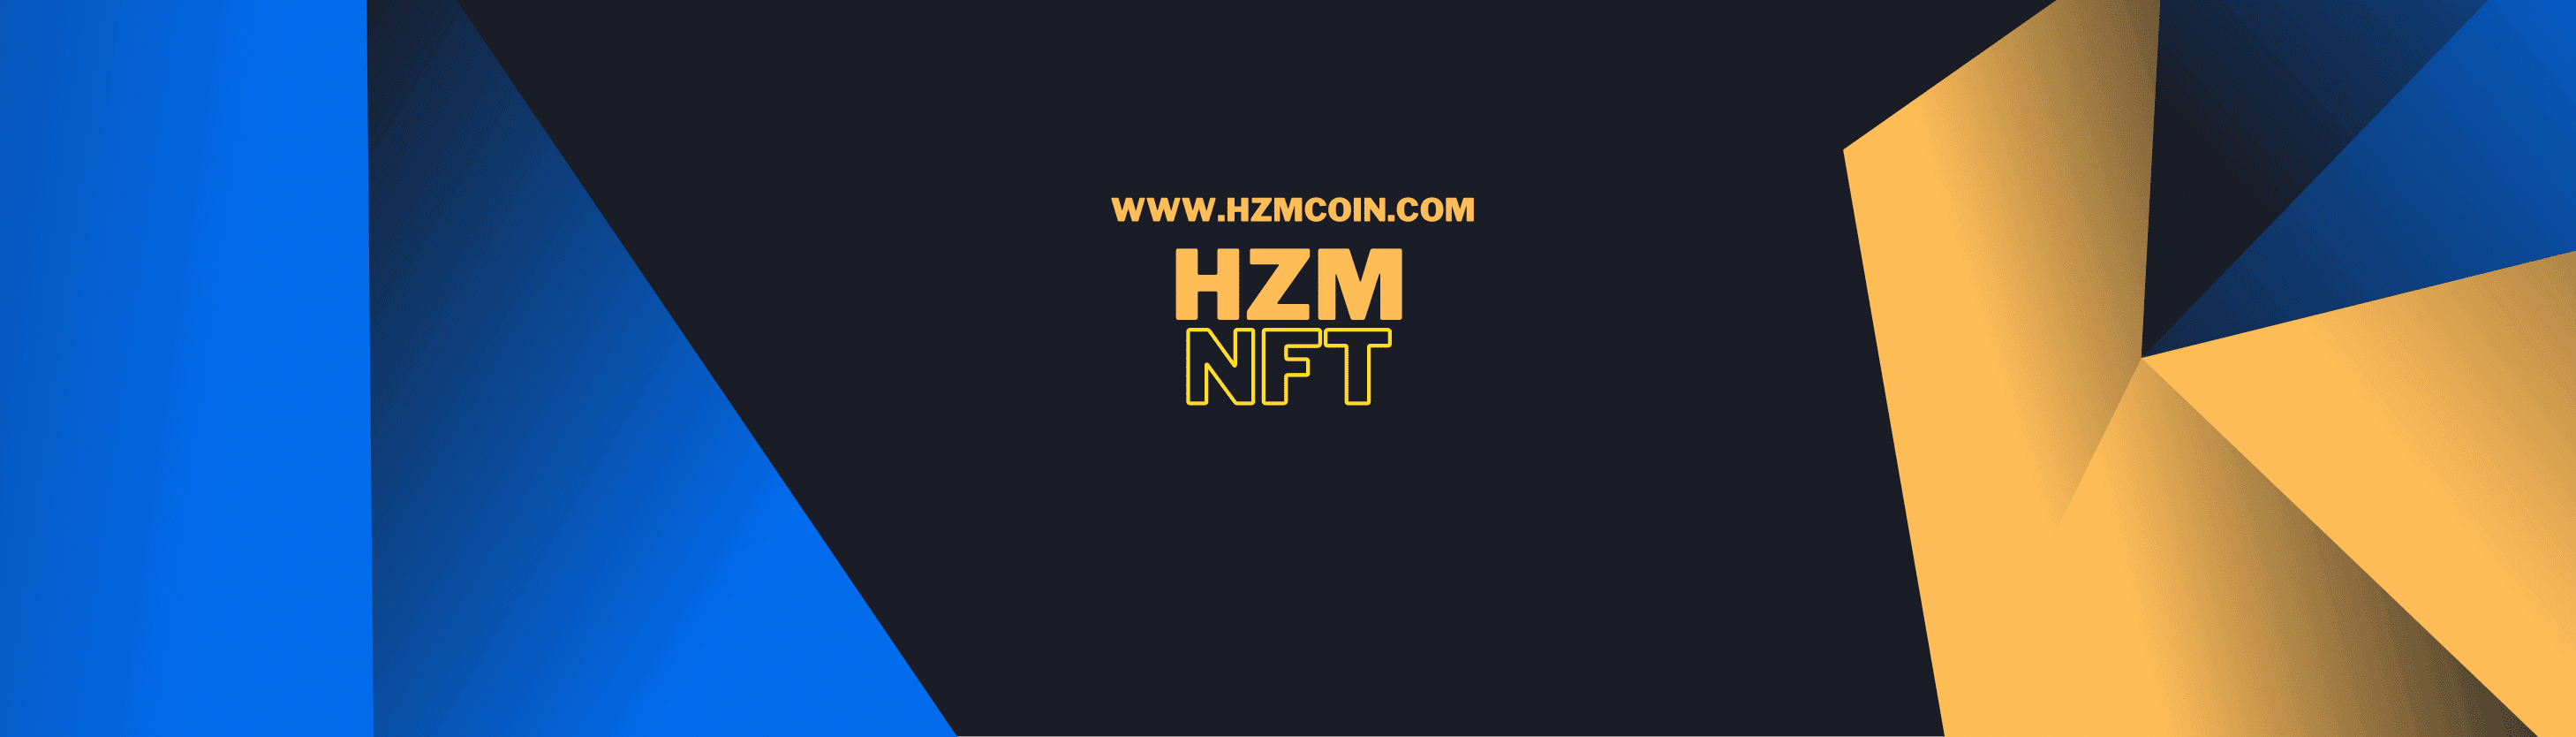 HZM_NFT bannière